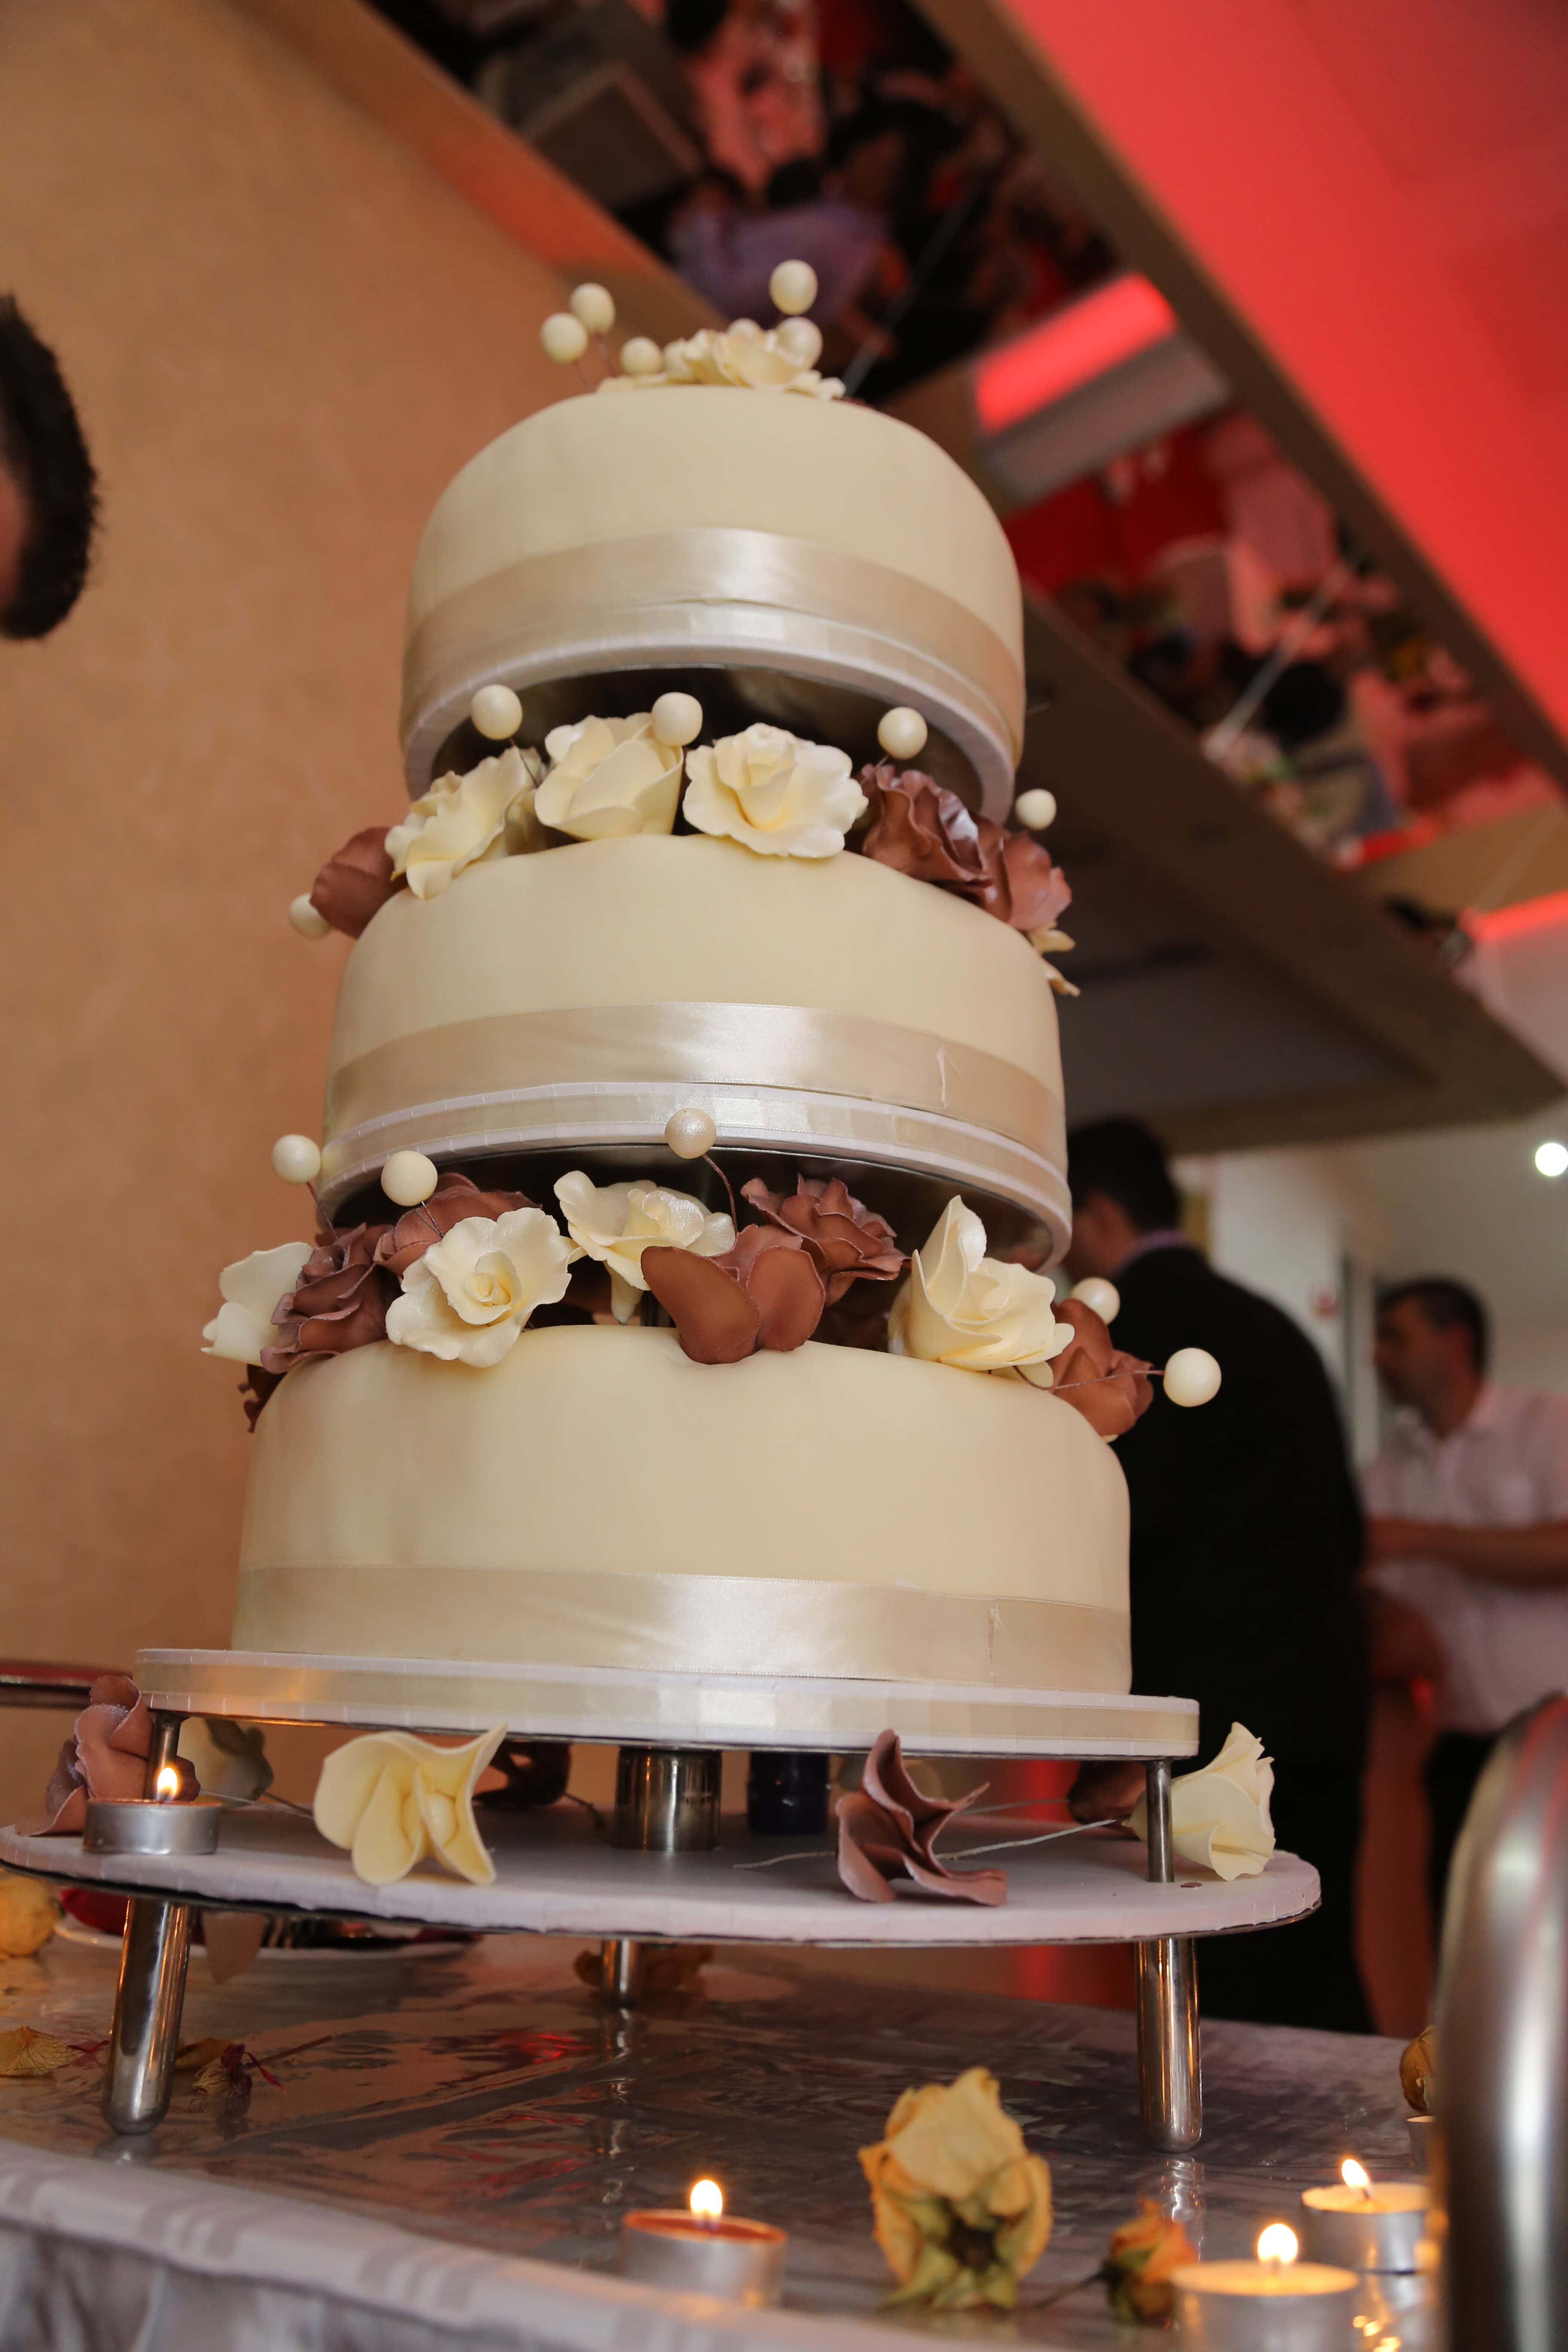 フリー写真画像 ディスコ バーテンダー ウエディング ケーキ 結婚式 ロマンス インテリア デザイン キャンドル 人々 お祝い チョコレート